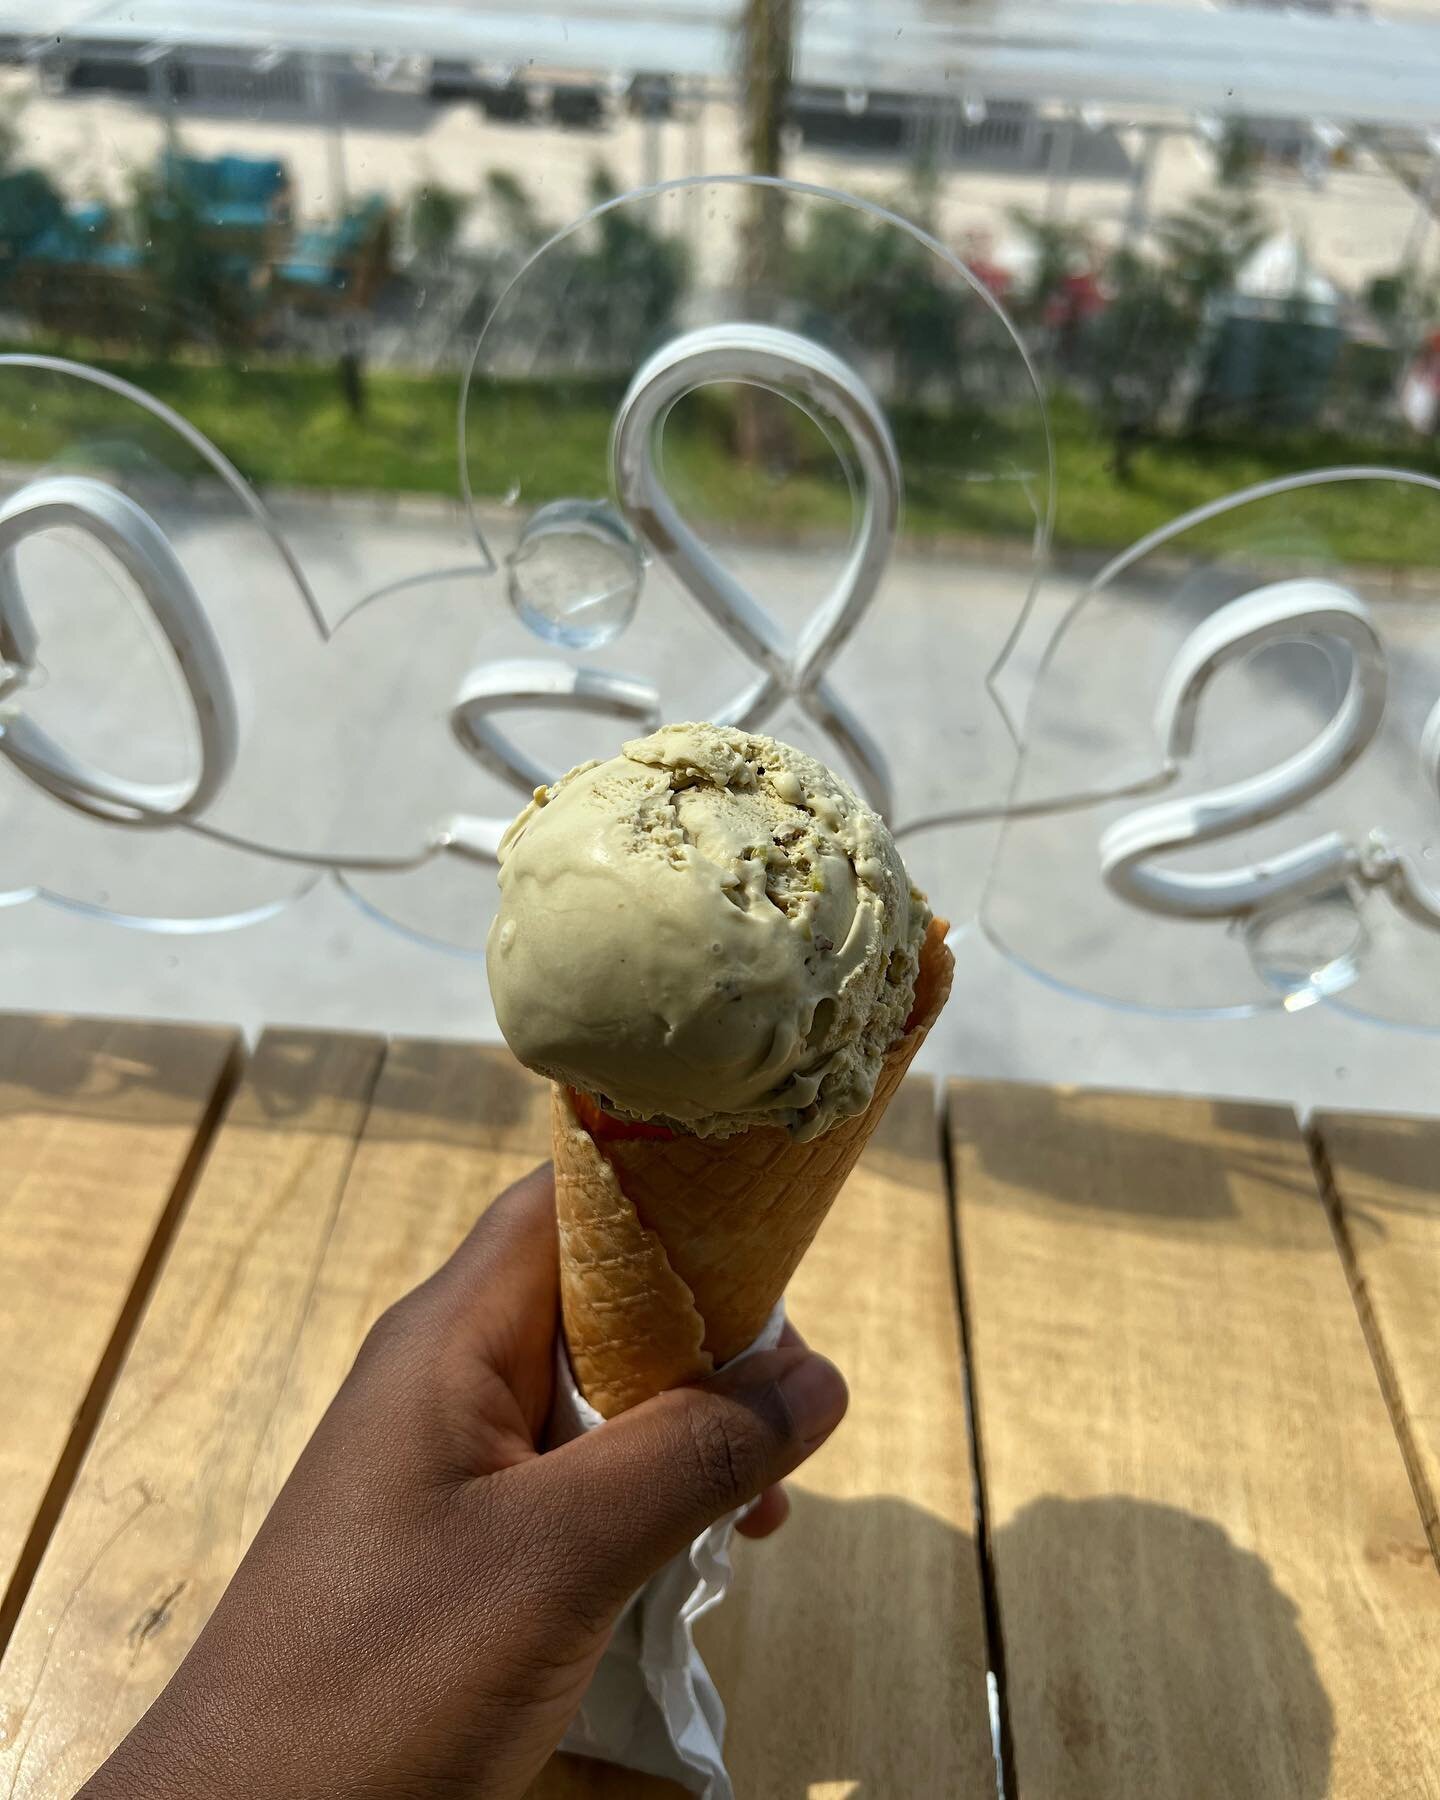 The pistachio gelato from @loompaland.ng 🍦

📍Box Mall Beach, Oniru 

#eeeeeats #eatdrinklagos